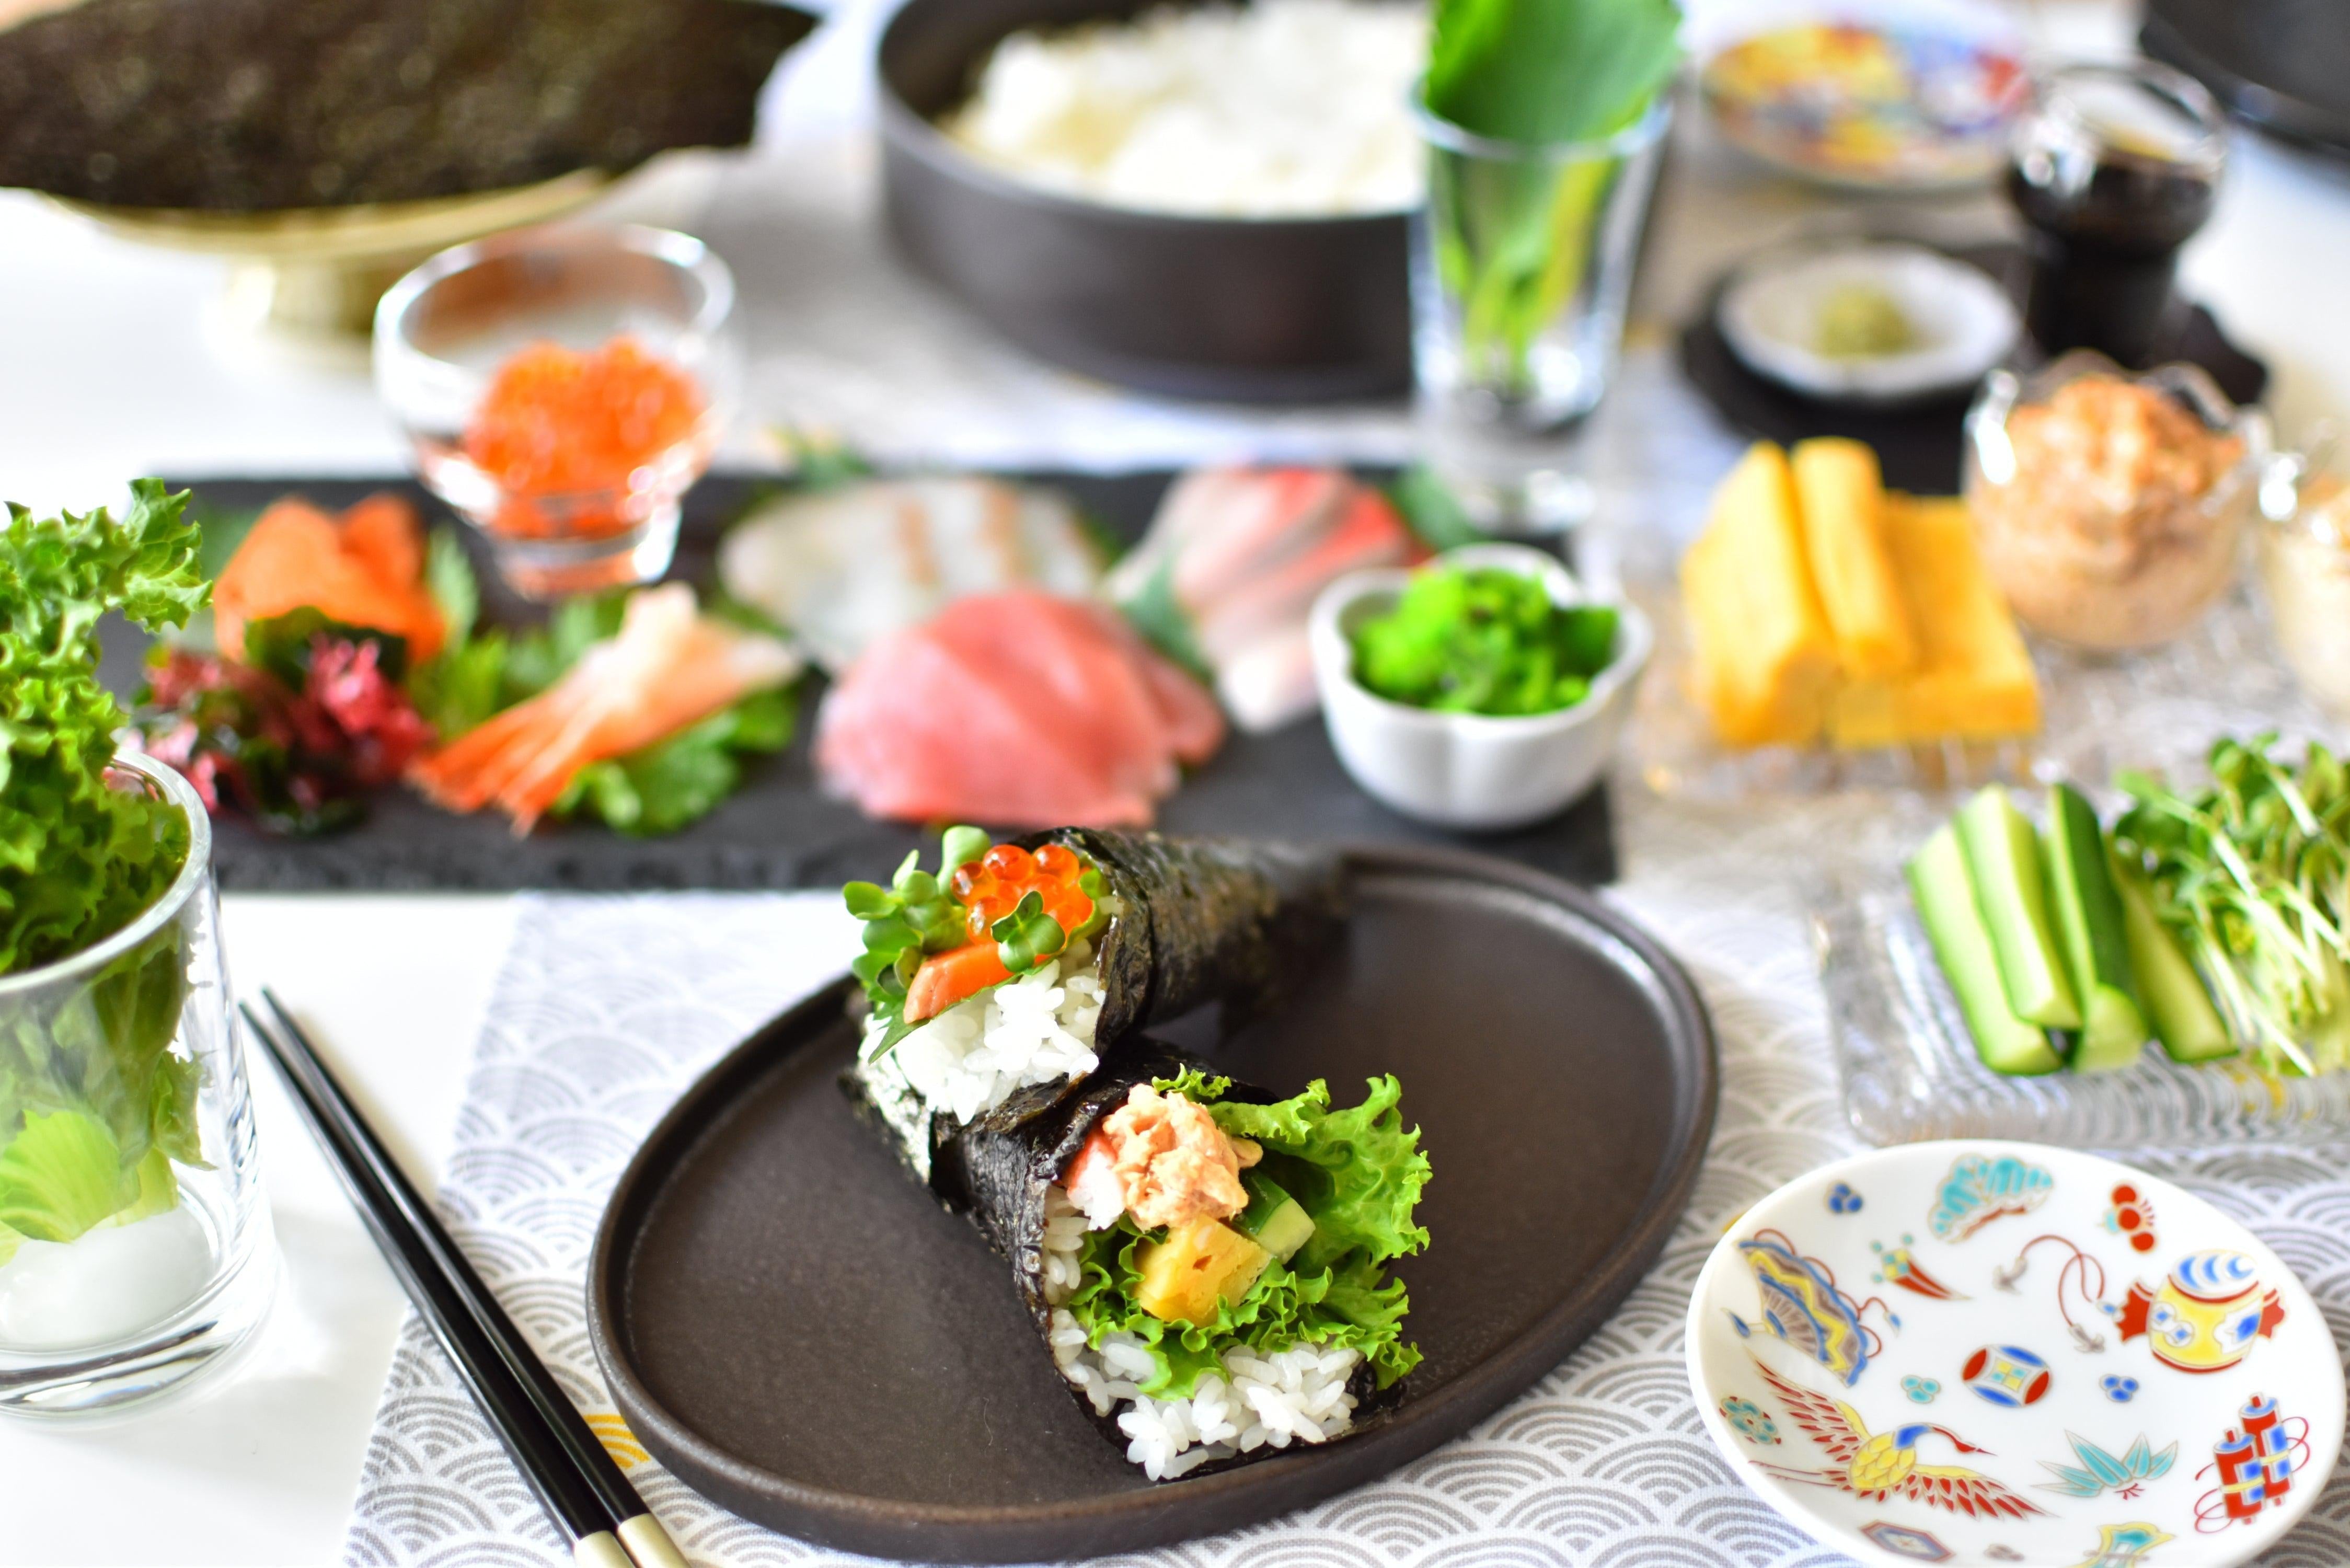 http://japanesetaste.com/cdn/shop/articles/how-to-make-temaki-sushi-hand-rolls-japanese-taste.jpg?v=1701485181&width=5760